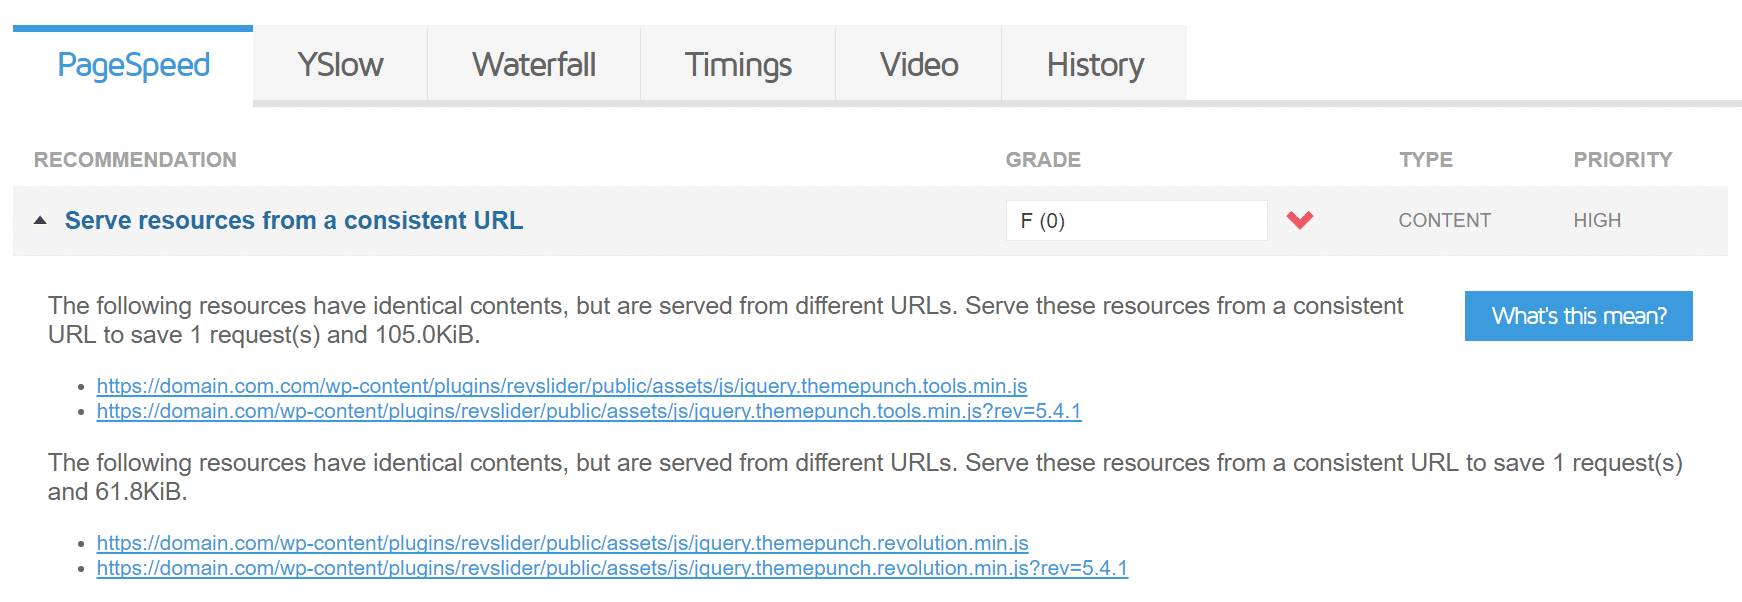 Servir recursos de um URL consistente